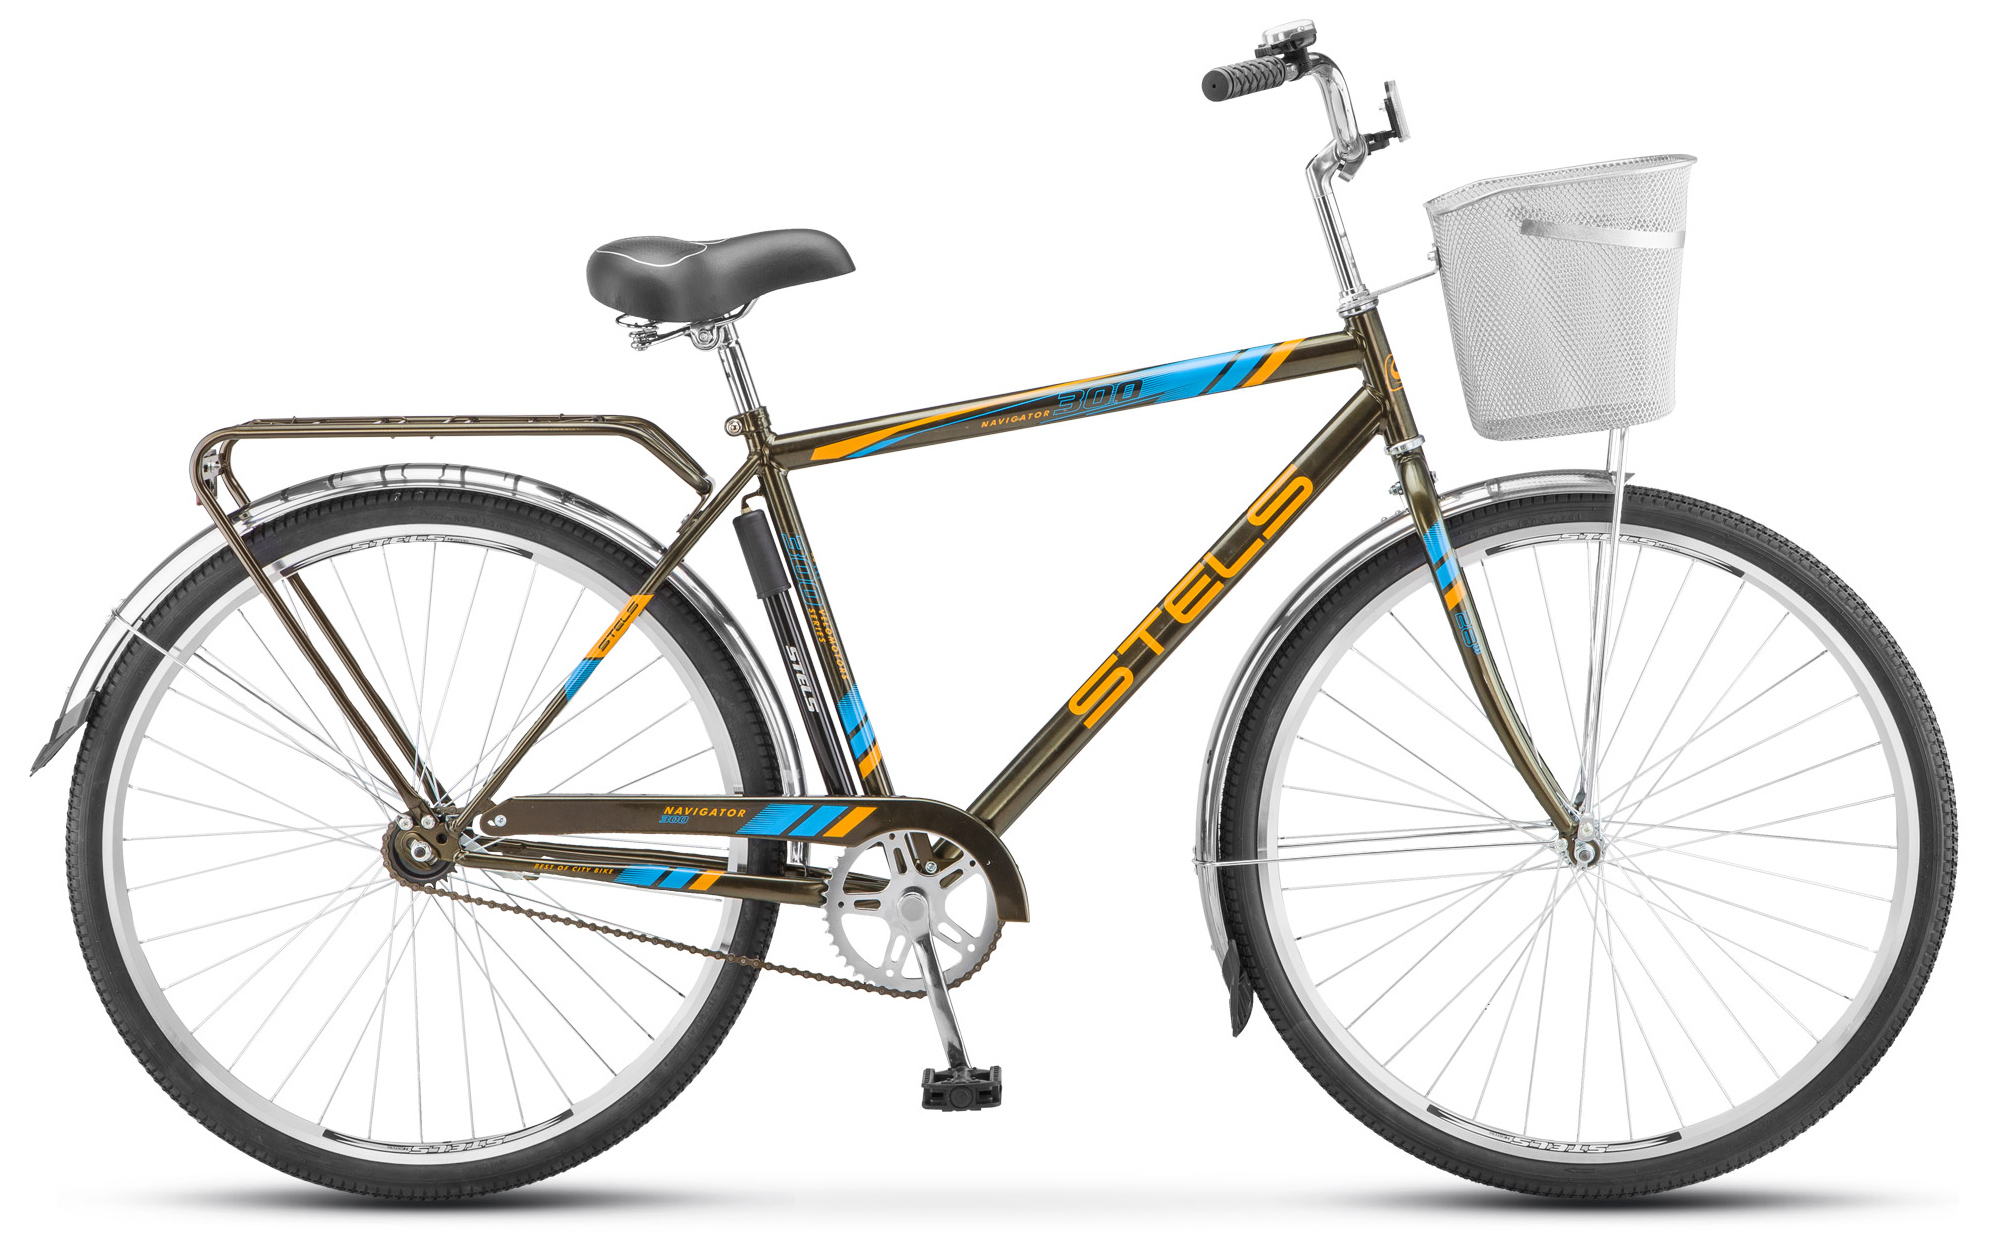  Отзывы о Городском велосипеде Stels Navigator 300 Gent 28 (Z010) 2019